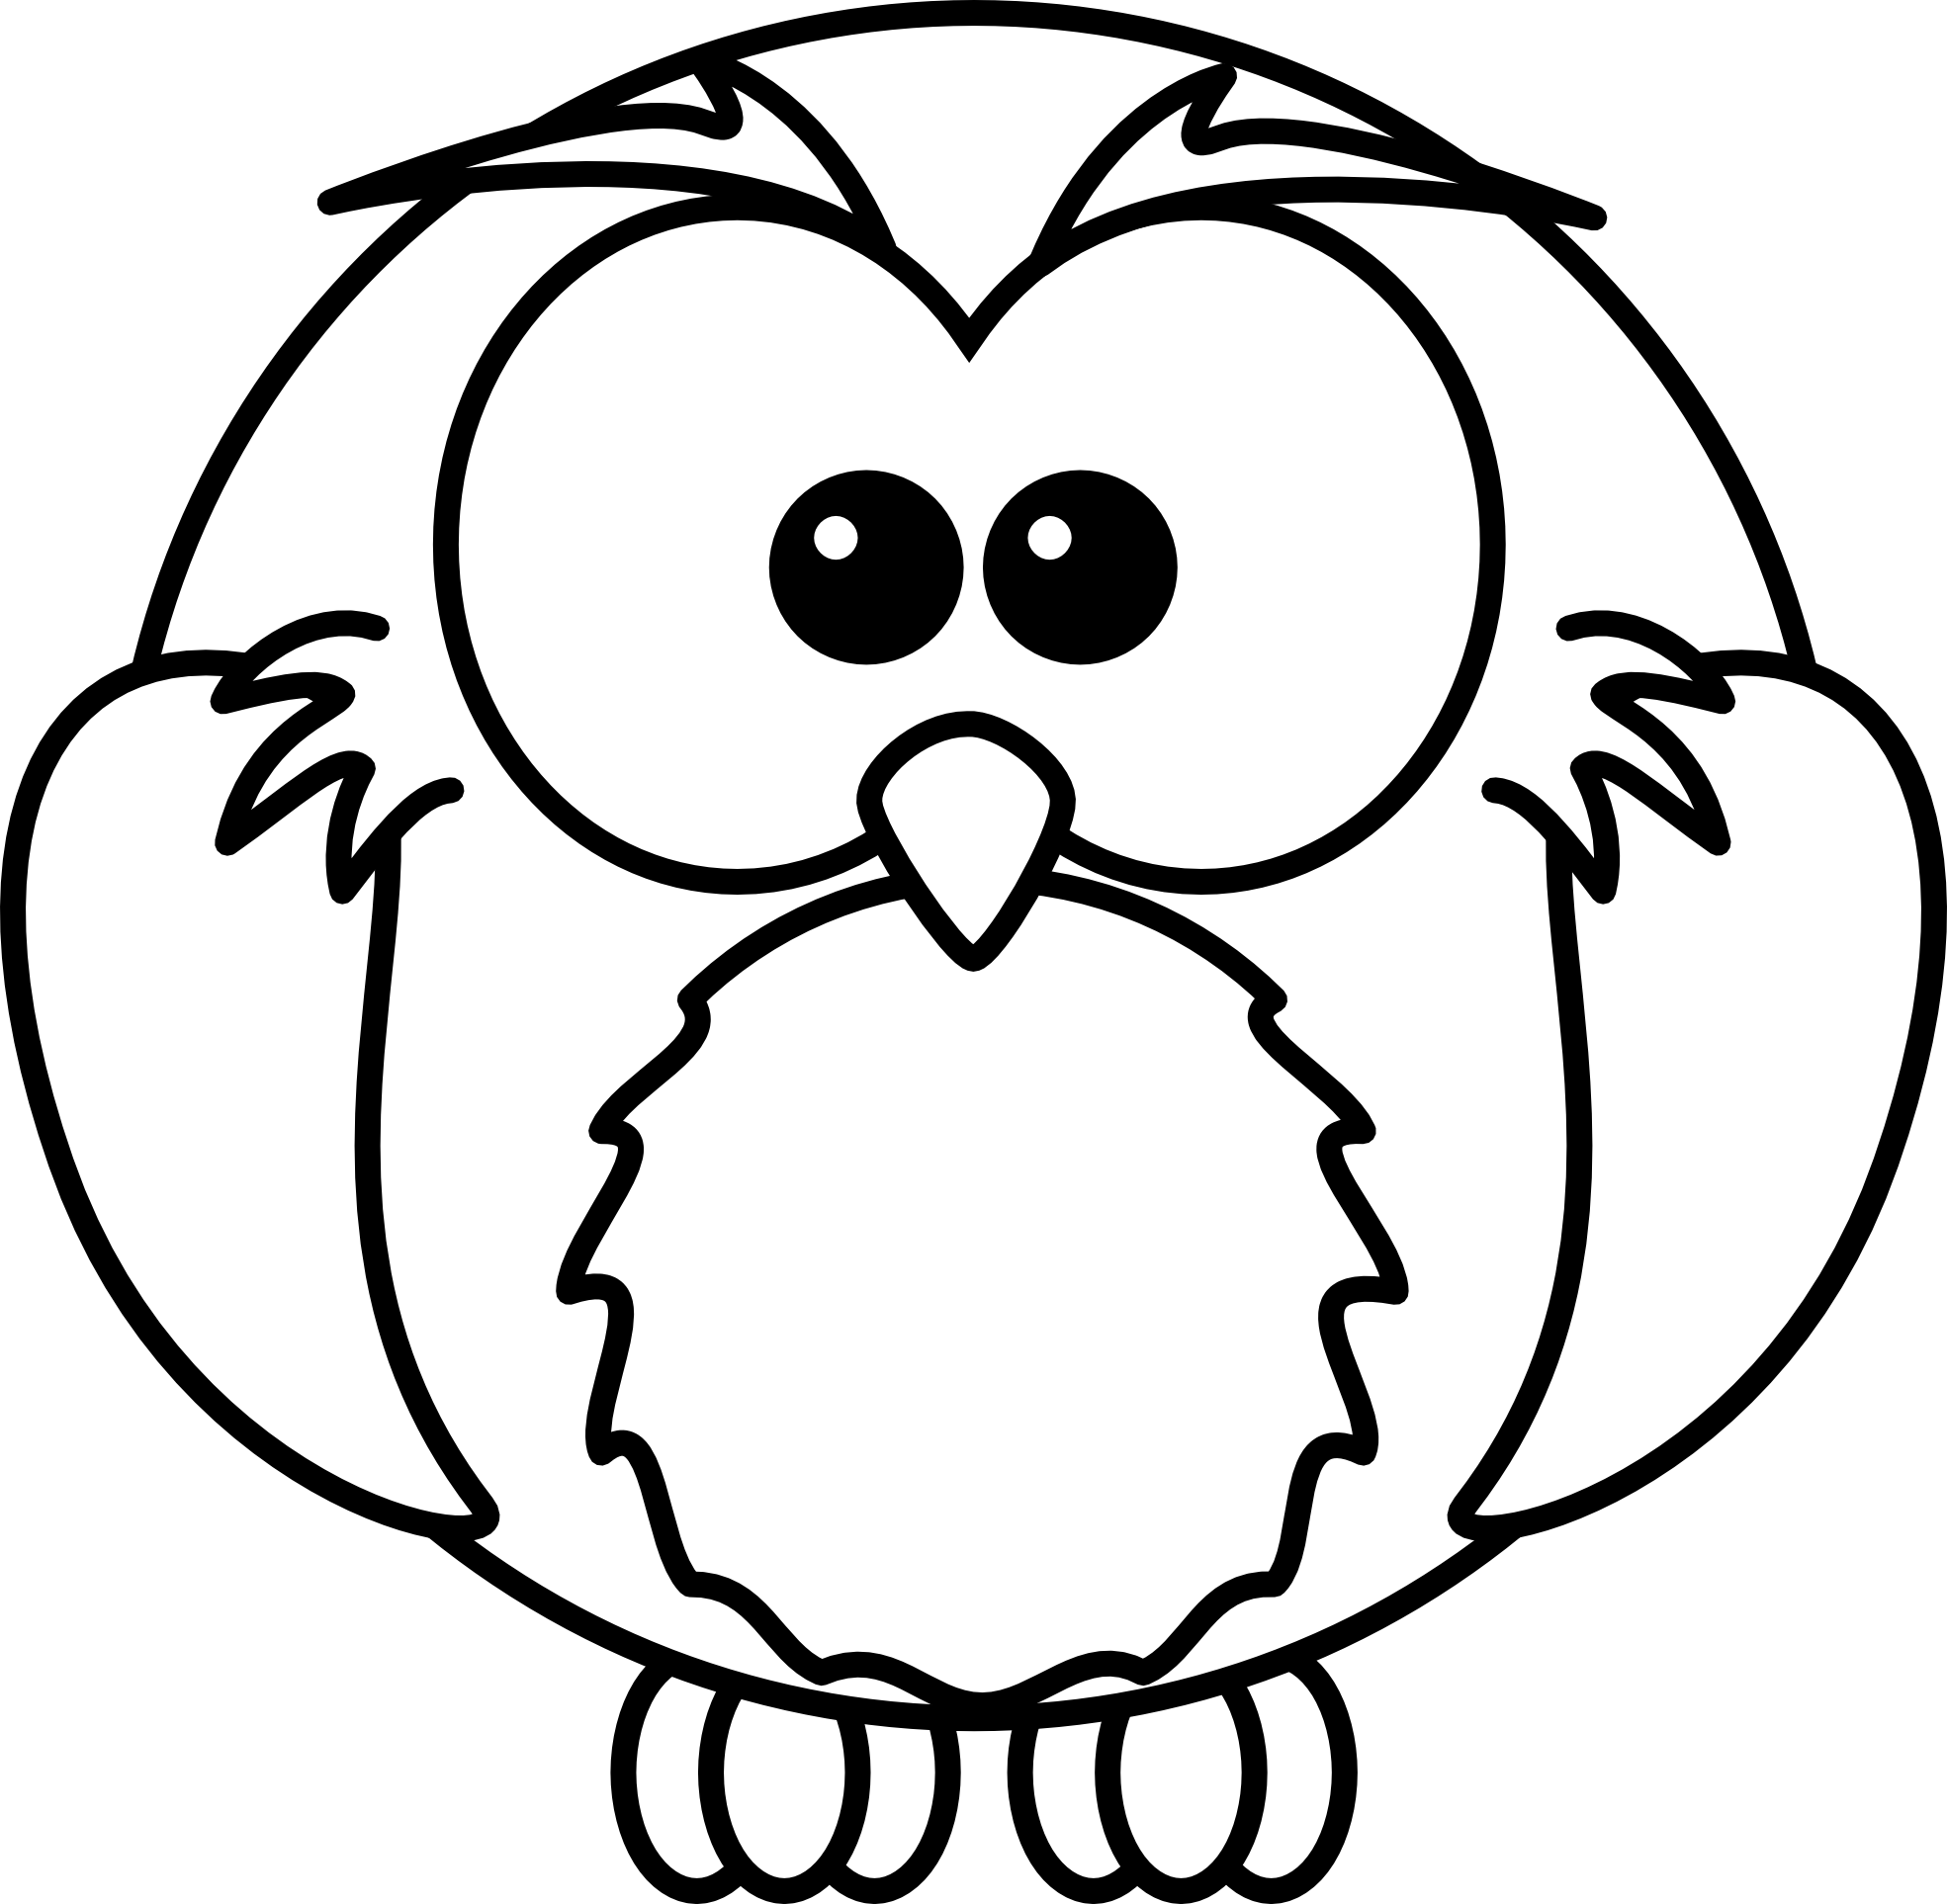 Free black and white. September clipart owl